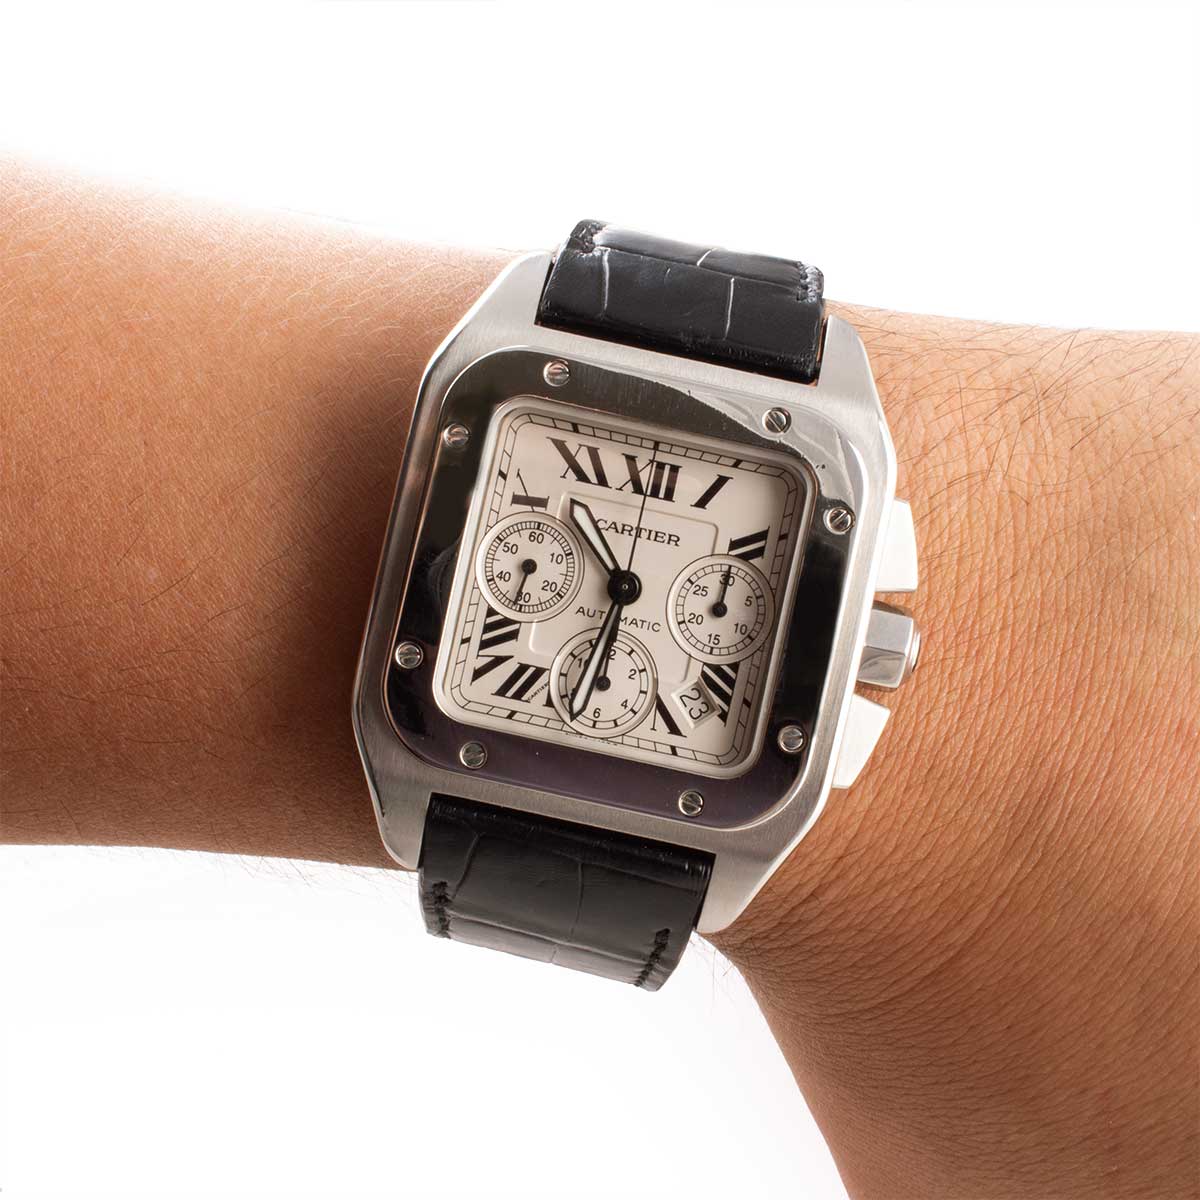 Montre d'occasion - Cartier - Santos 100 XL Chronographe - 6100€